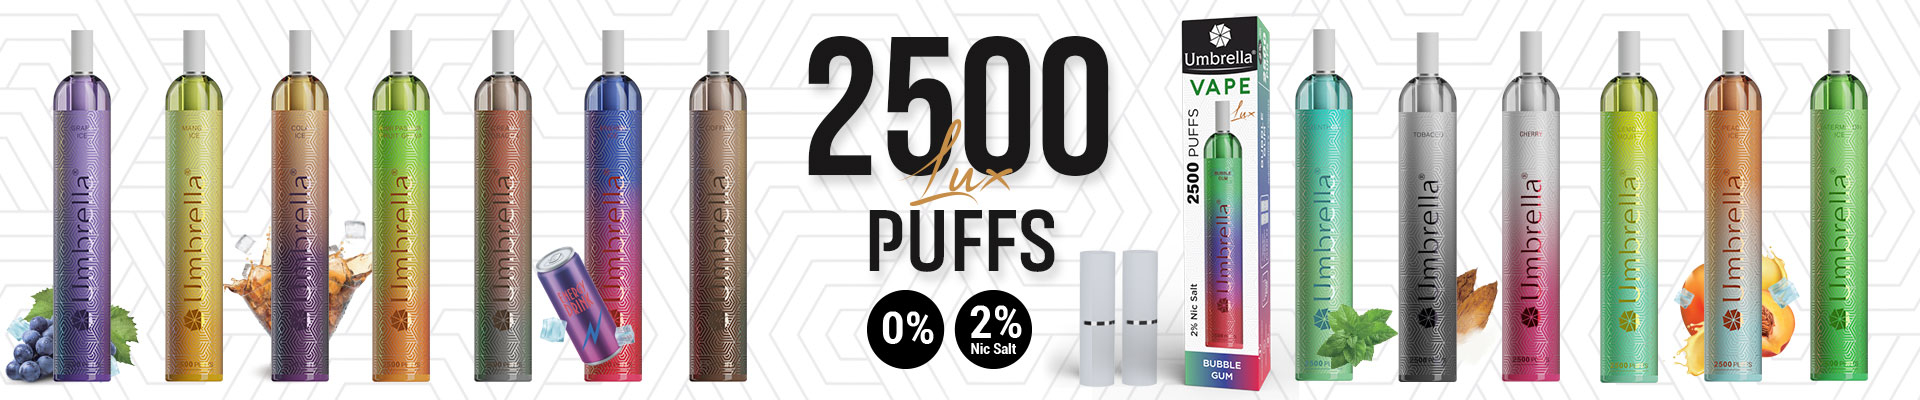 Disposable Vape 2200 puffs